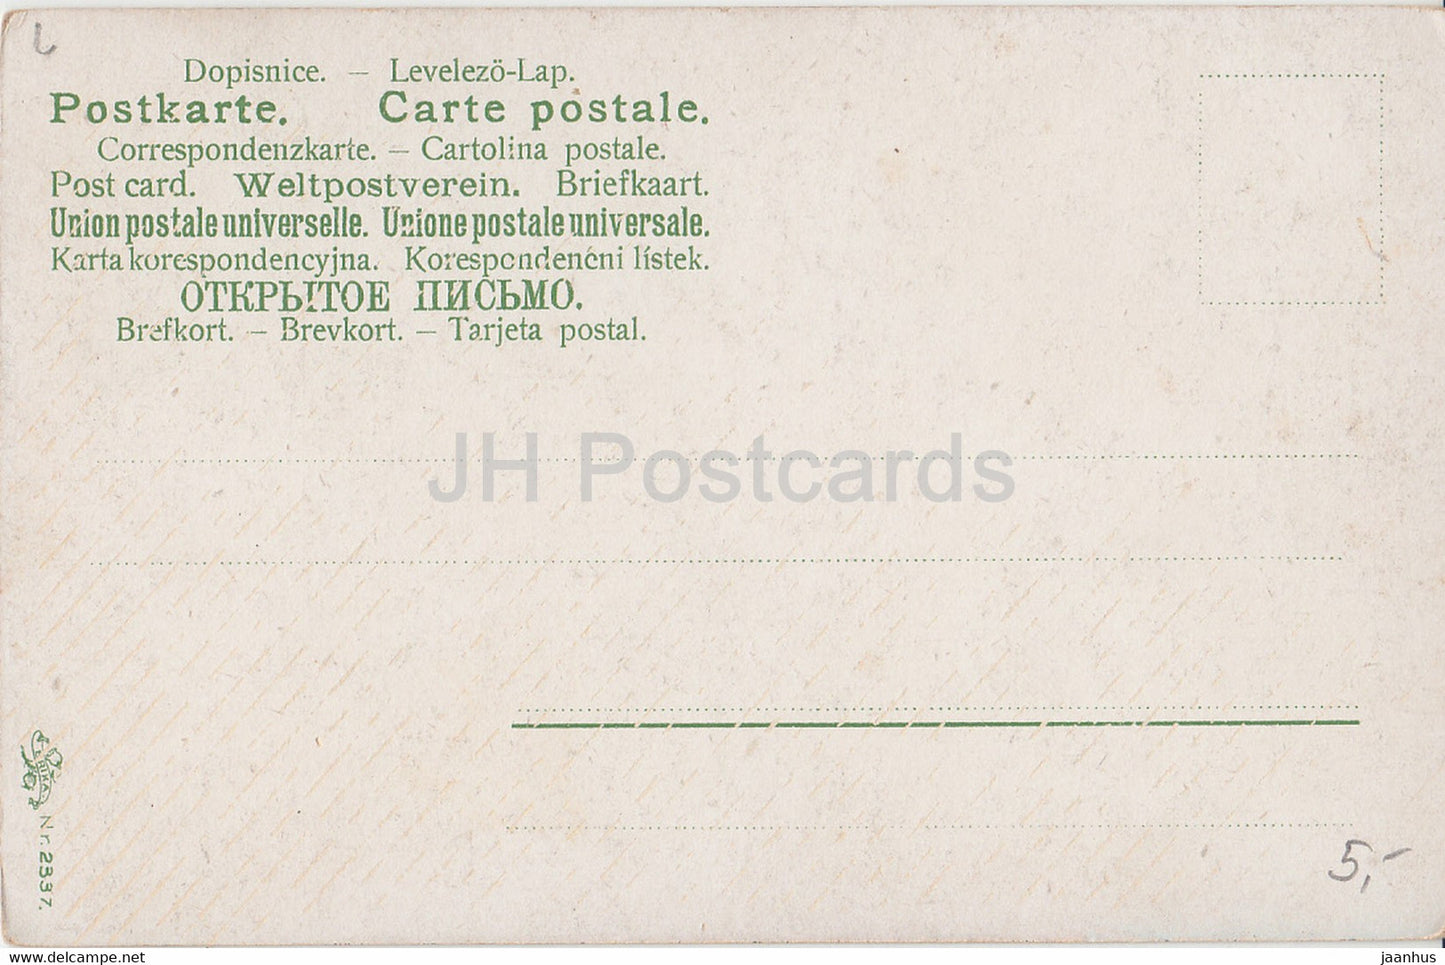 femme qui travaille sur le terrain - Erika Nr 2337 - carte postale ancienne - Allemagne - inutilisée